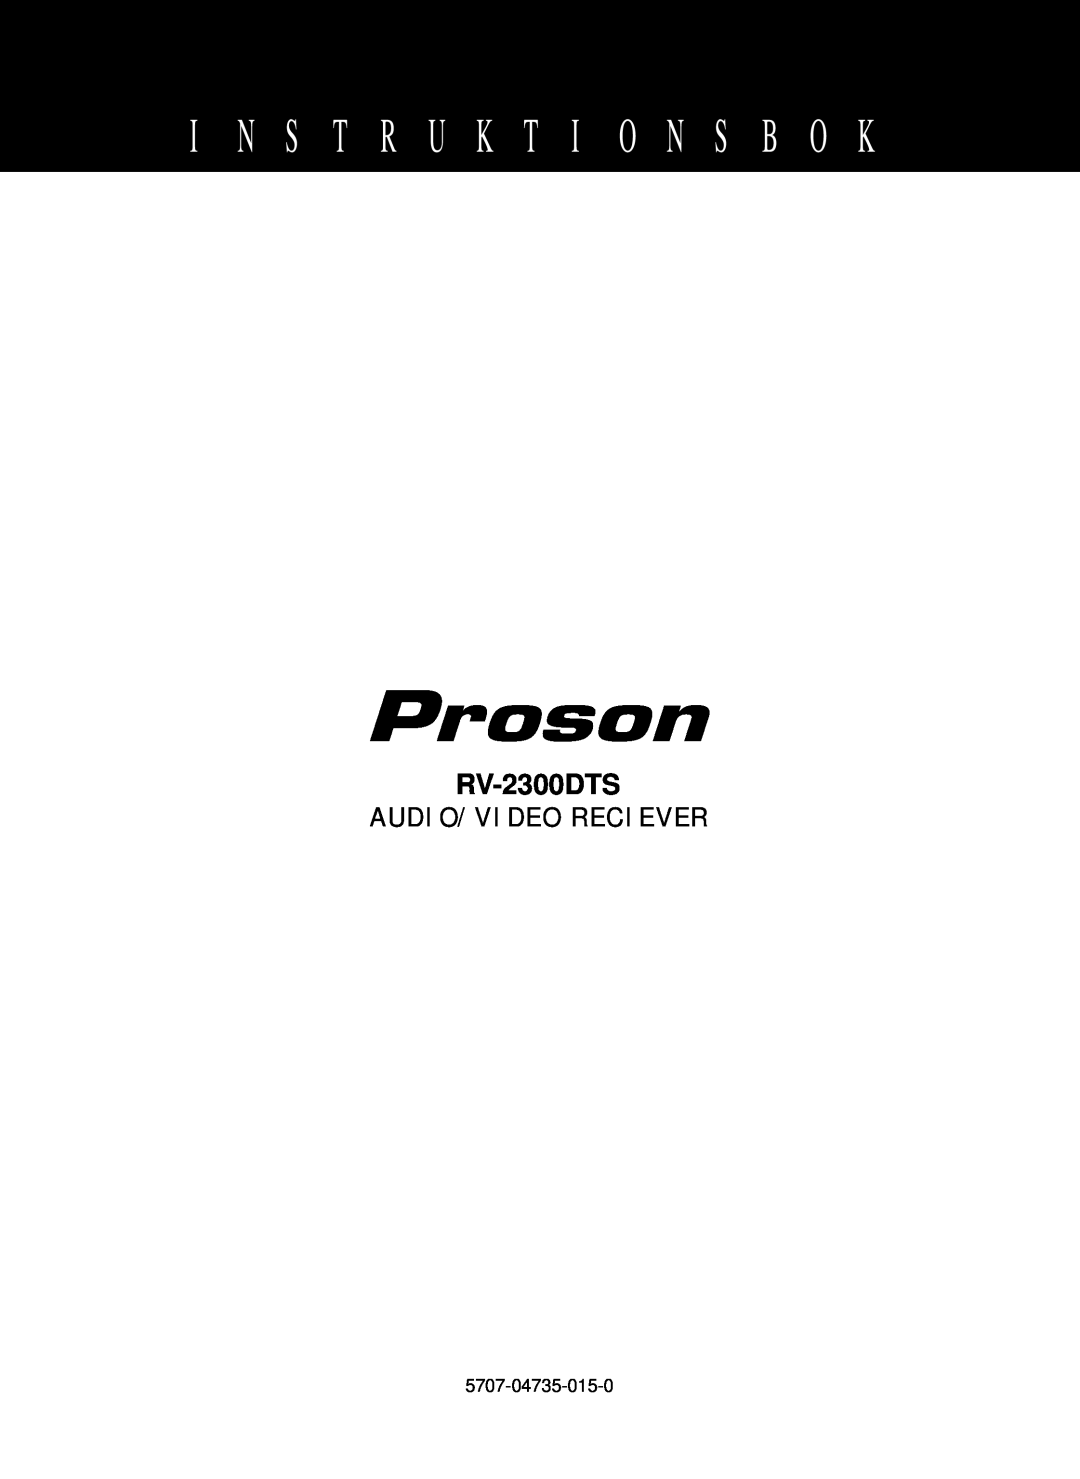 Proson RV-2300DTS manual I N S T R U K T I O N S B O K, Audio/Video Reciever 